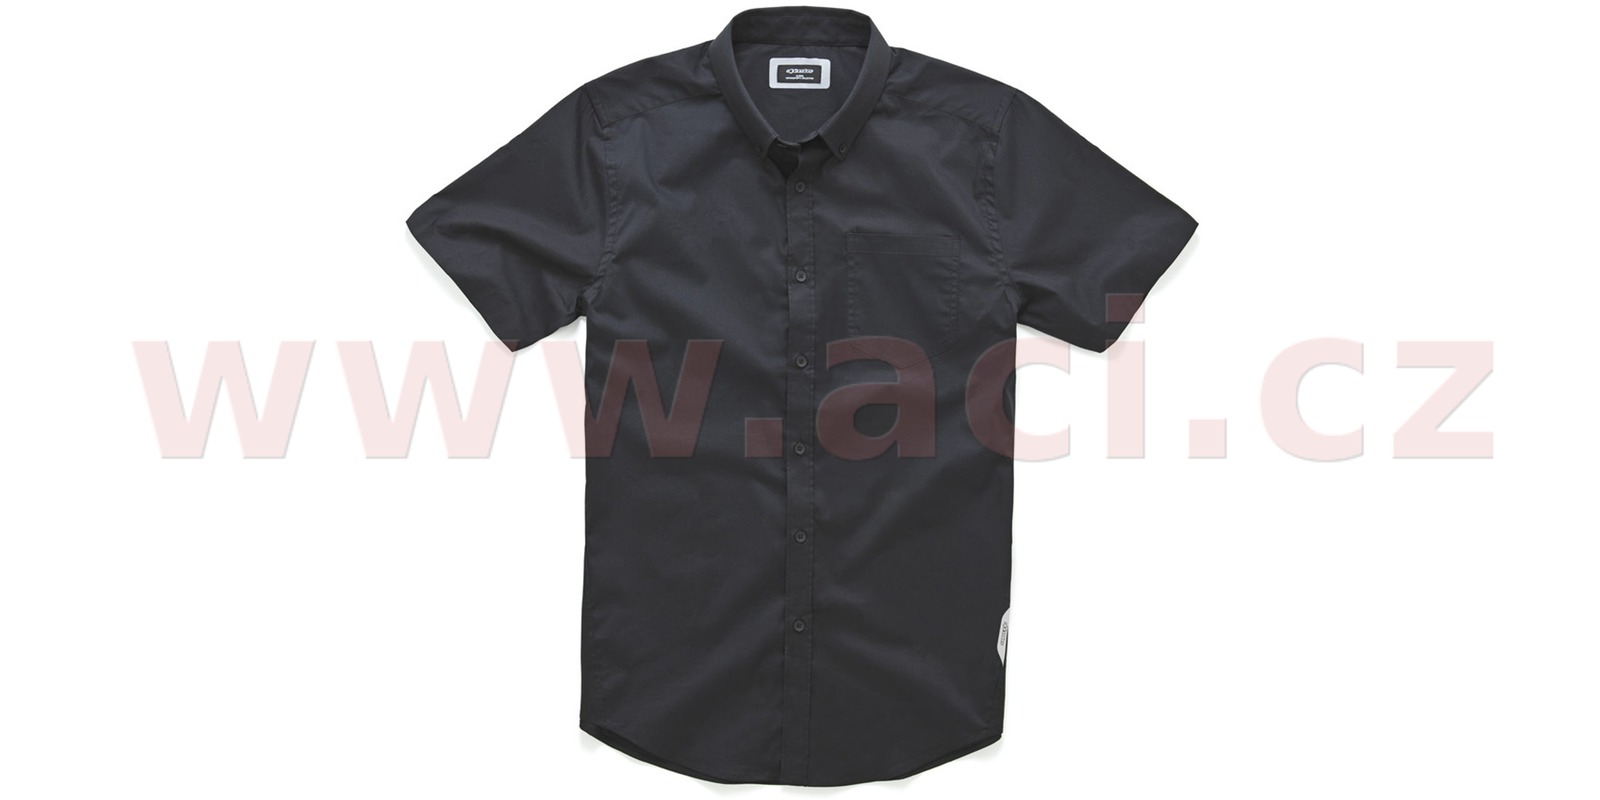 košile s krátkým rukávem AERO, ALPINESTARS (černá)